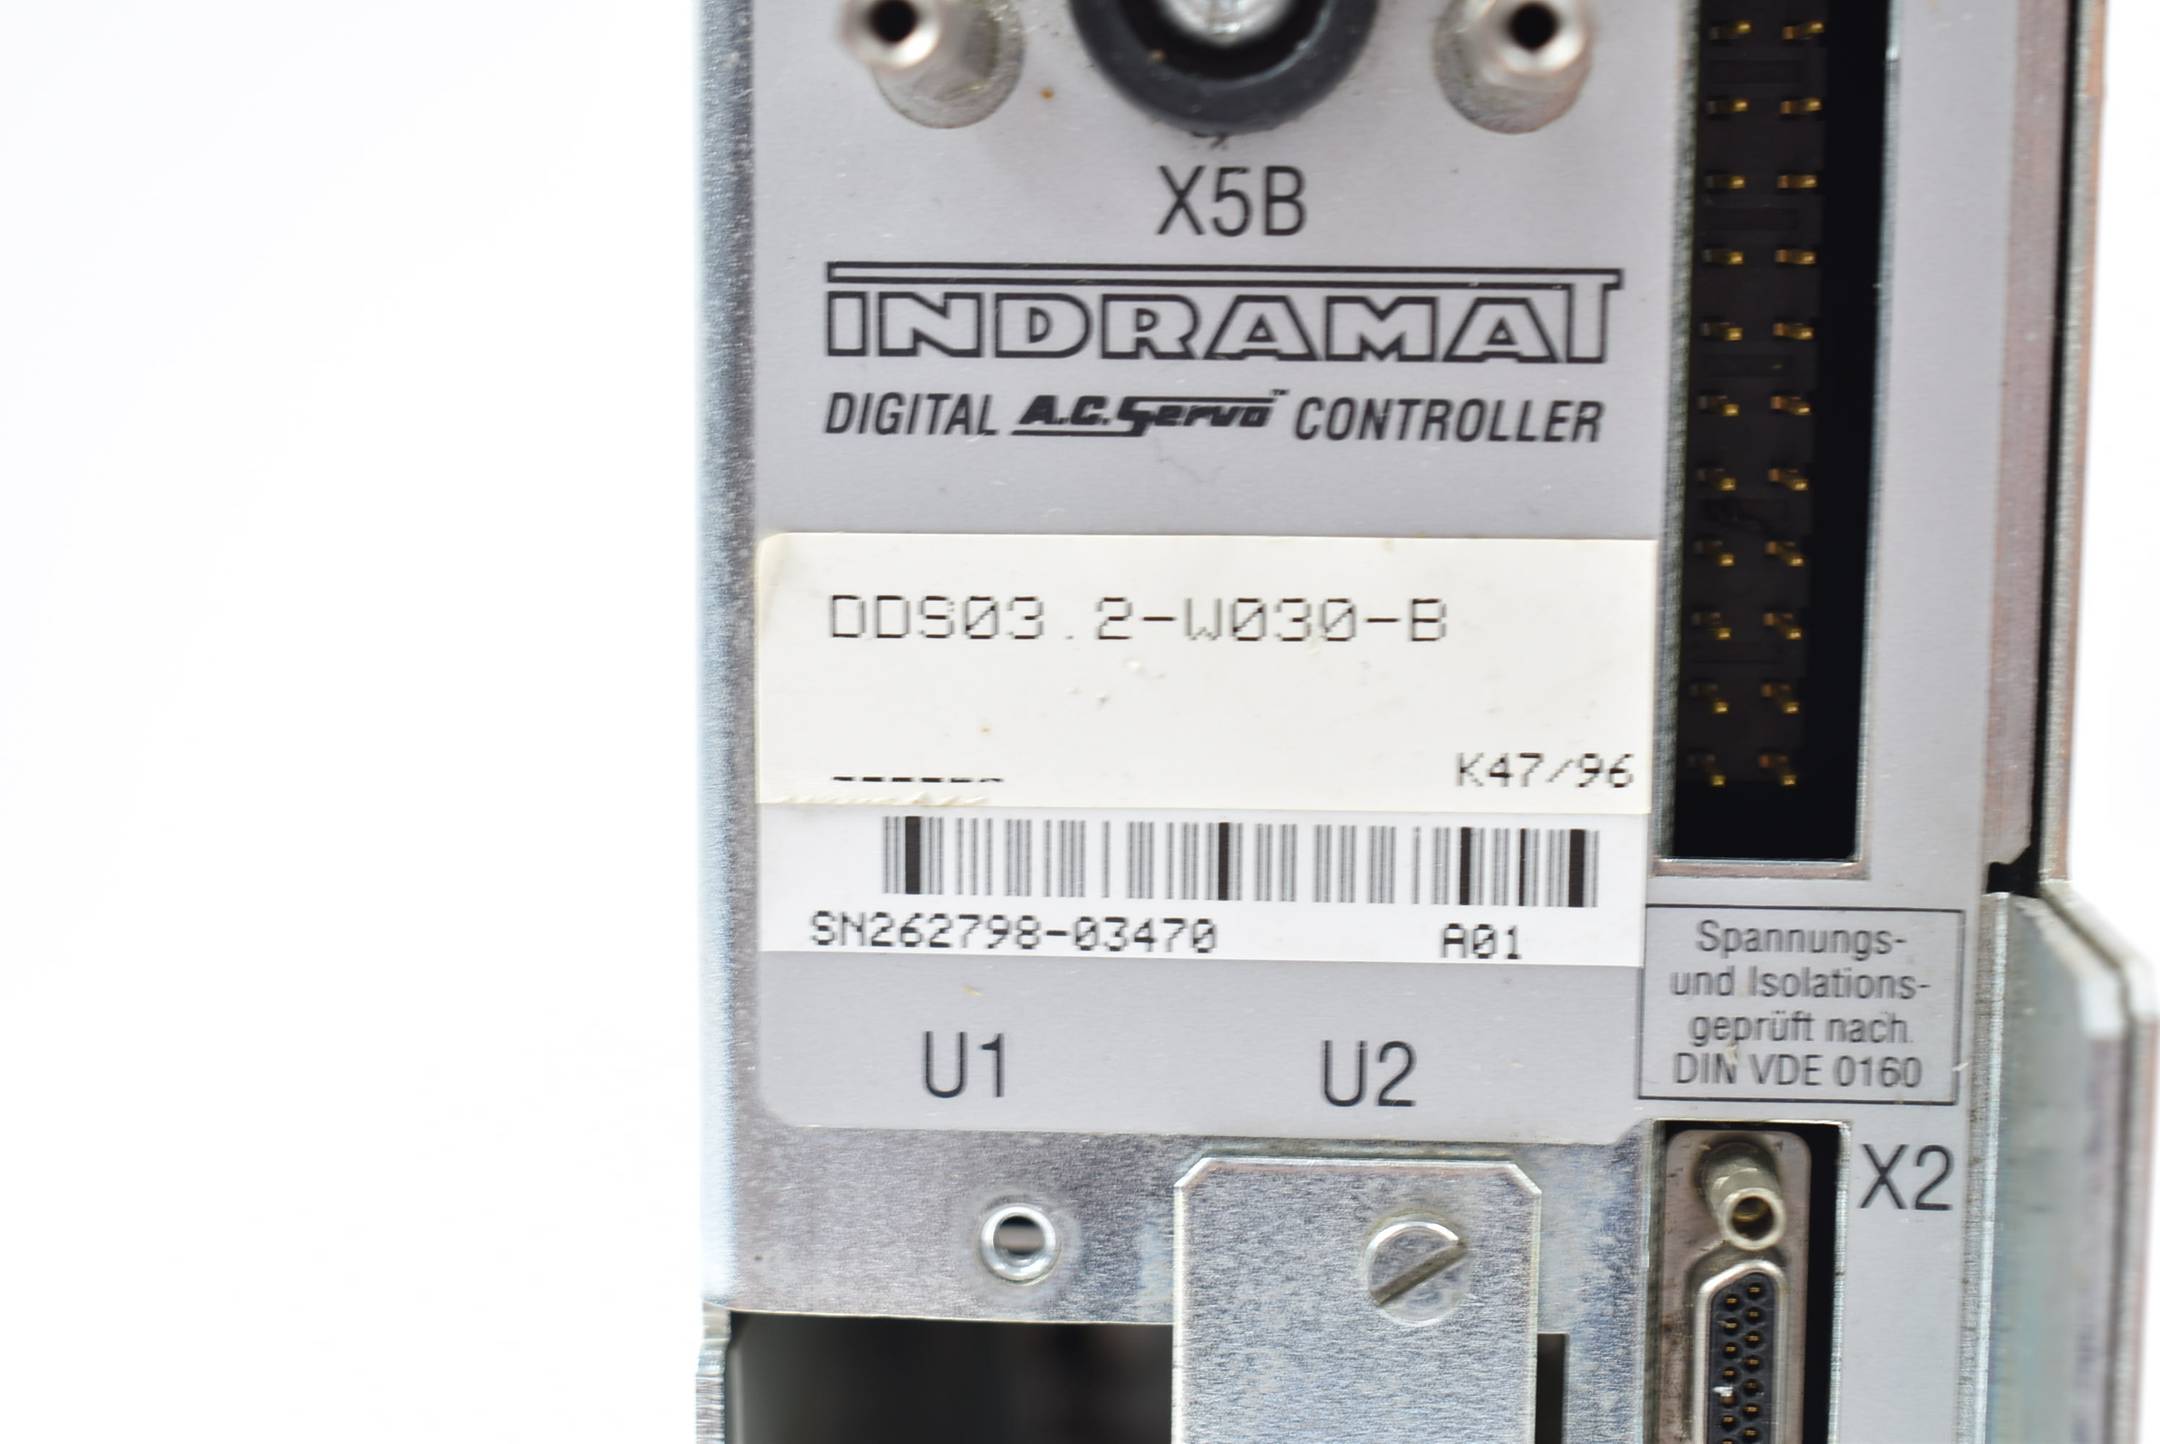 Indramat / Rexroth Digital Servo Controller DDS03.2-W030-B